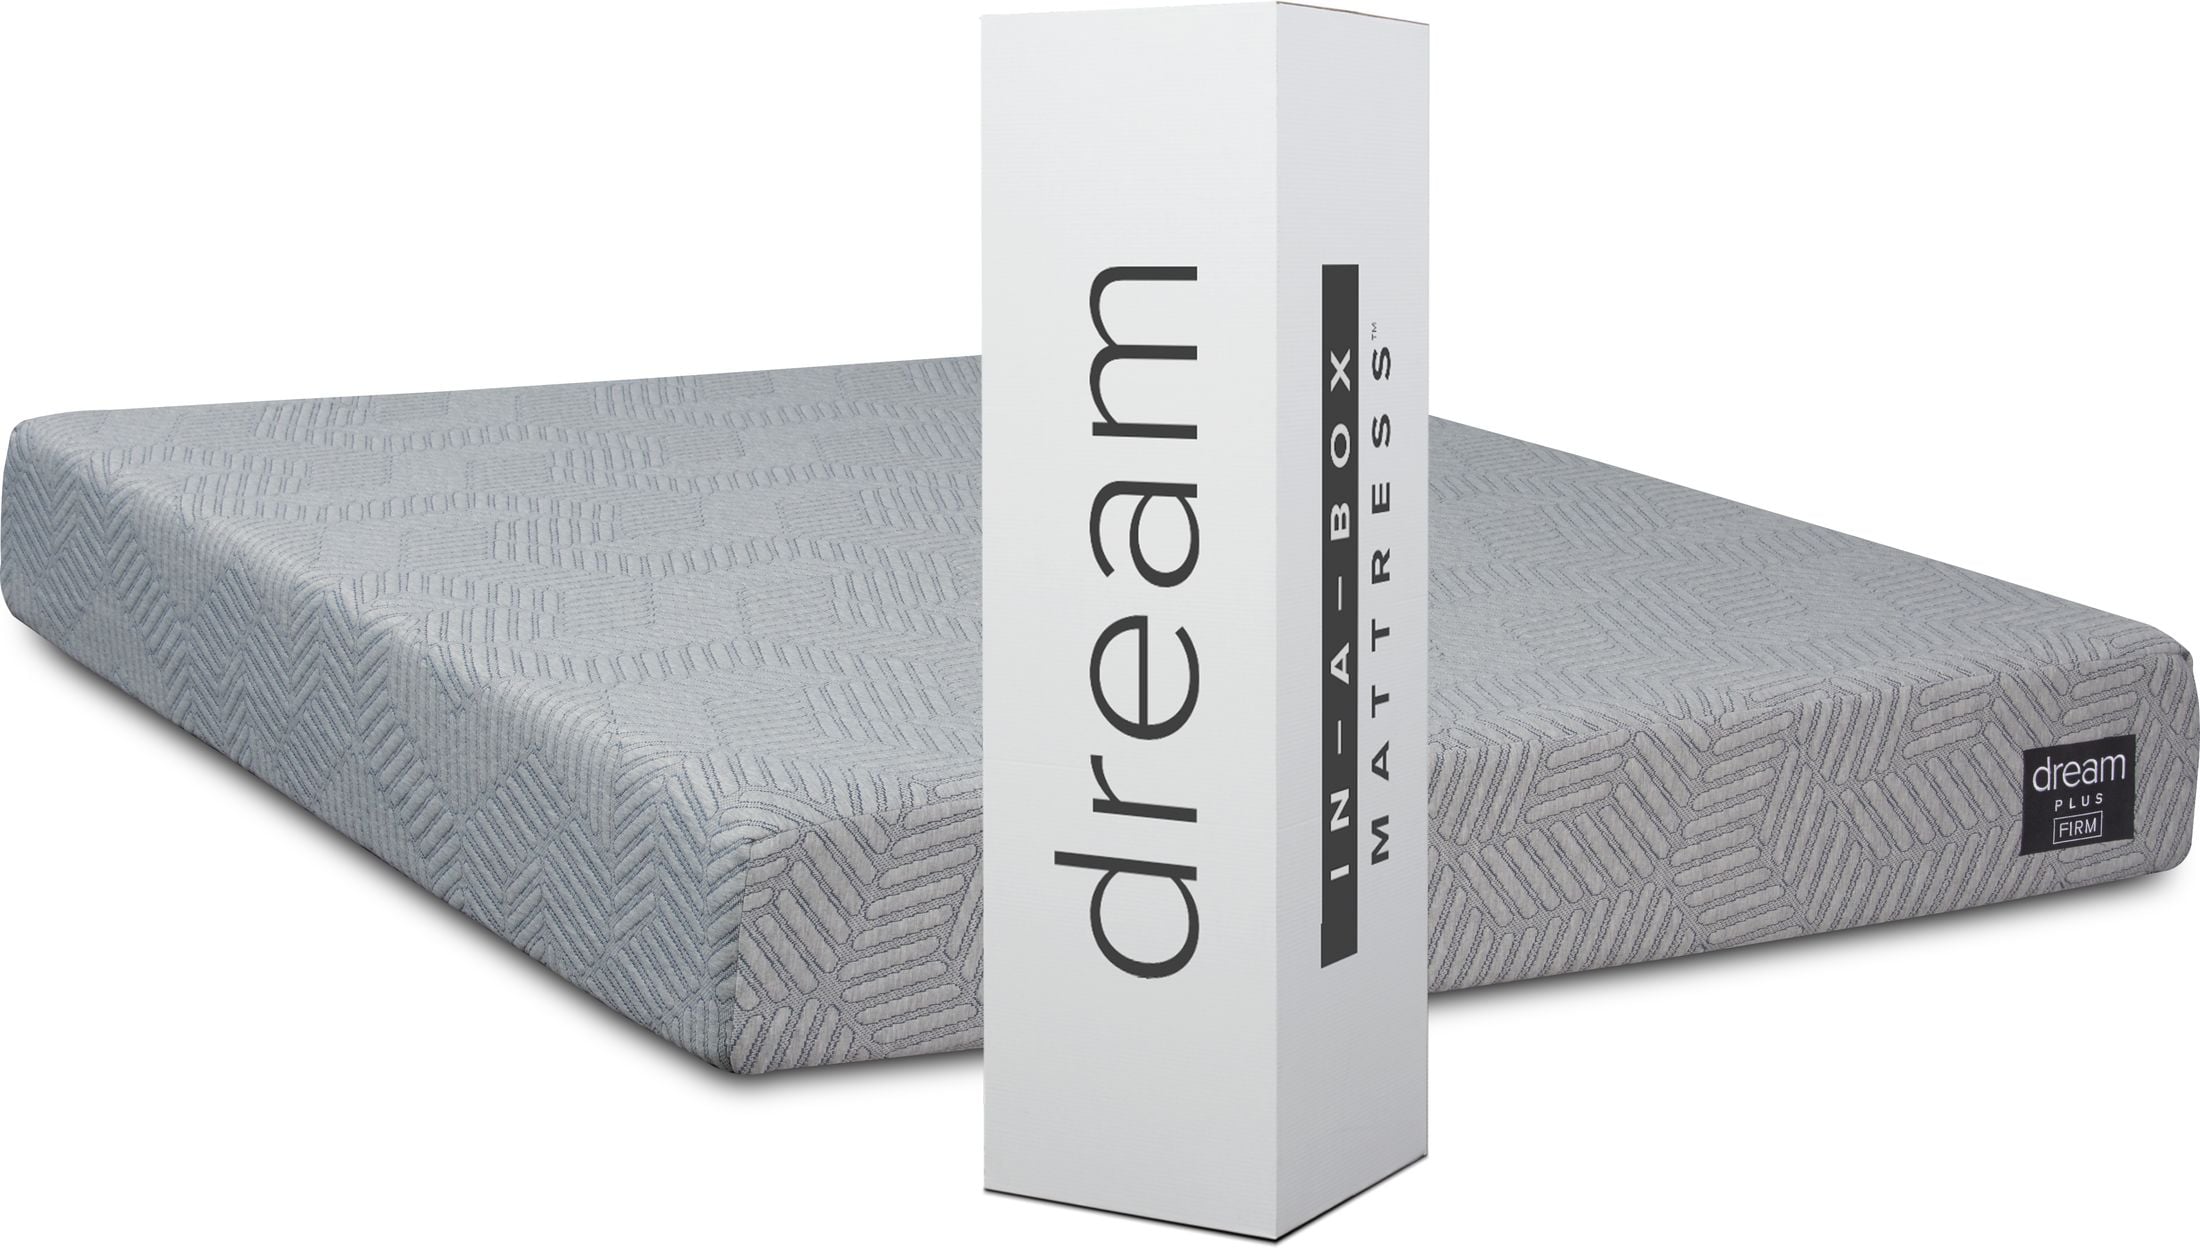 dream--in a box mattress reviews